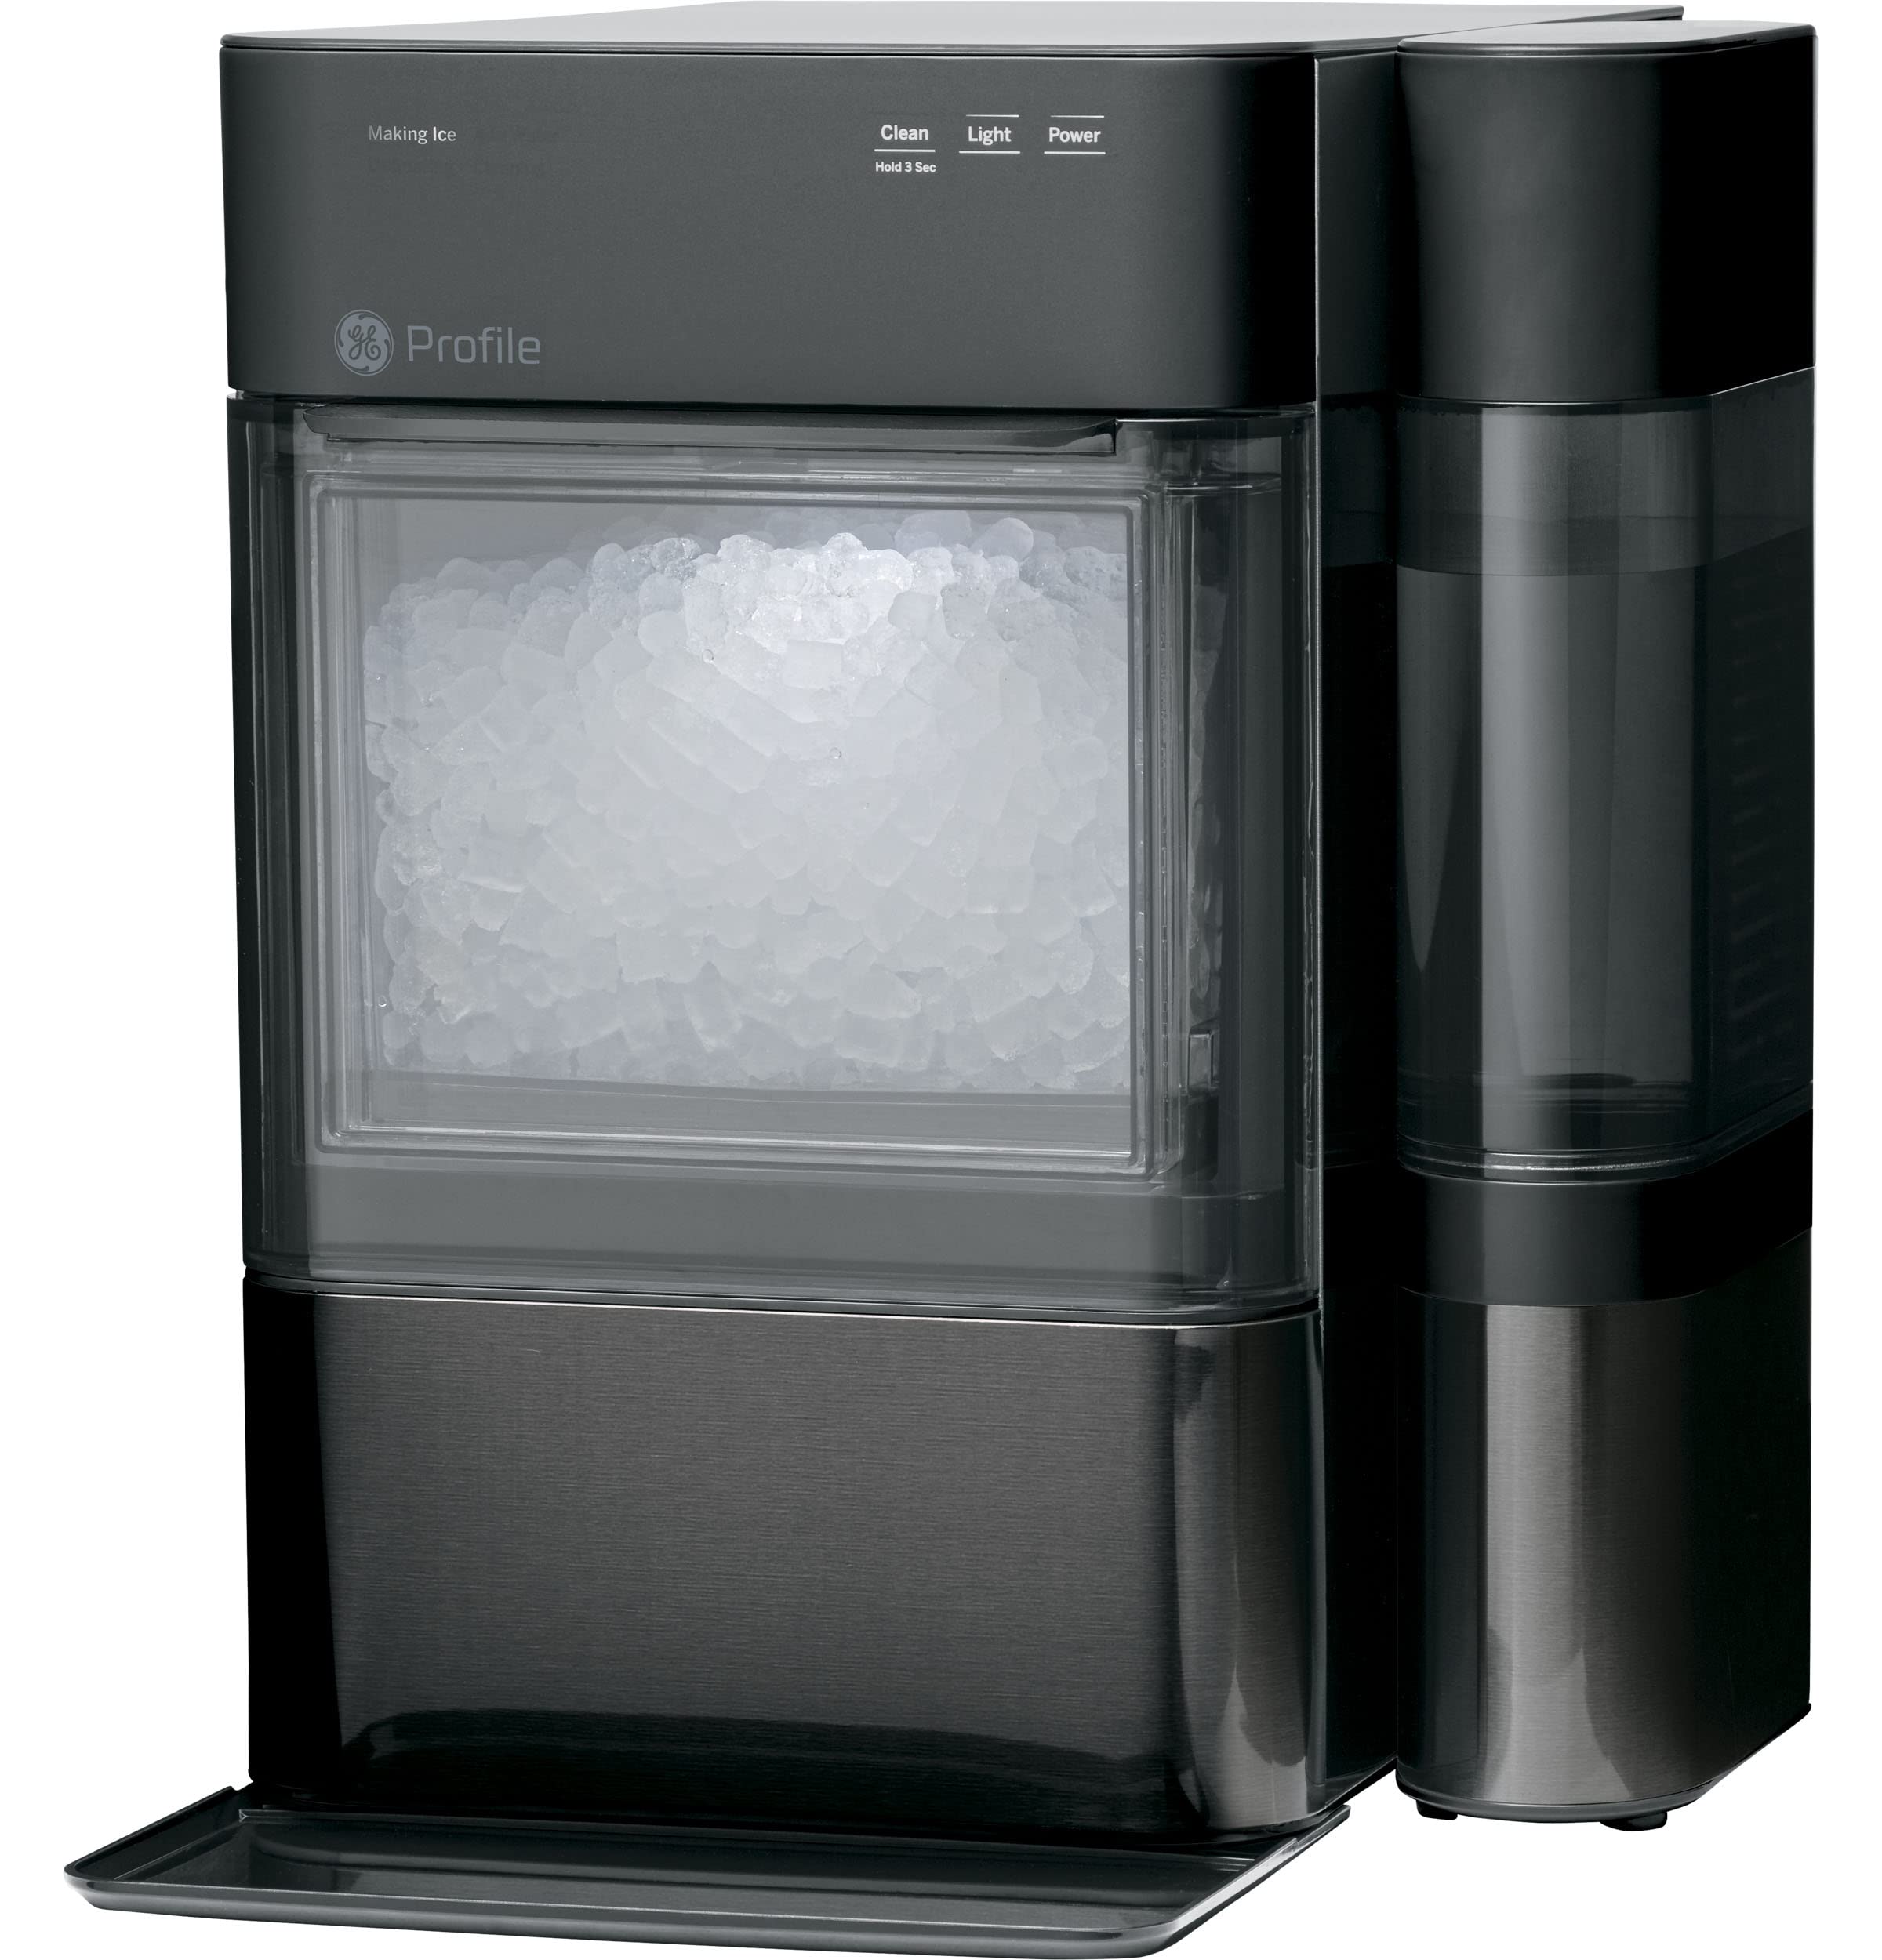 GE Profil Opale 2.0 | Machine à glaçons de comptoir avec réservoir latéral | Machine à glace avec connectivité WiFi | Essentiels de la cuisine pour la maison intellinte | Inox noir